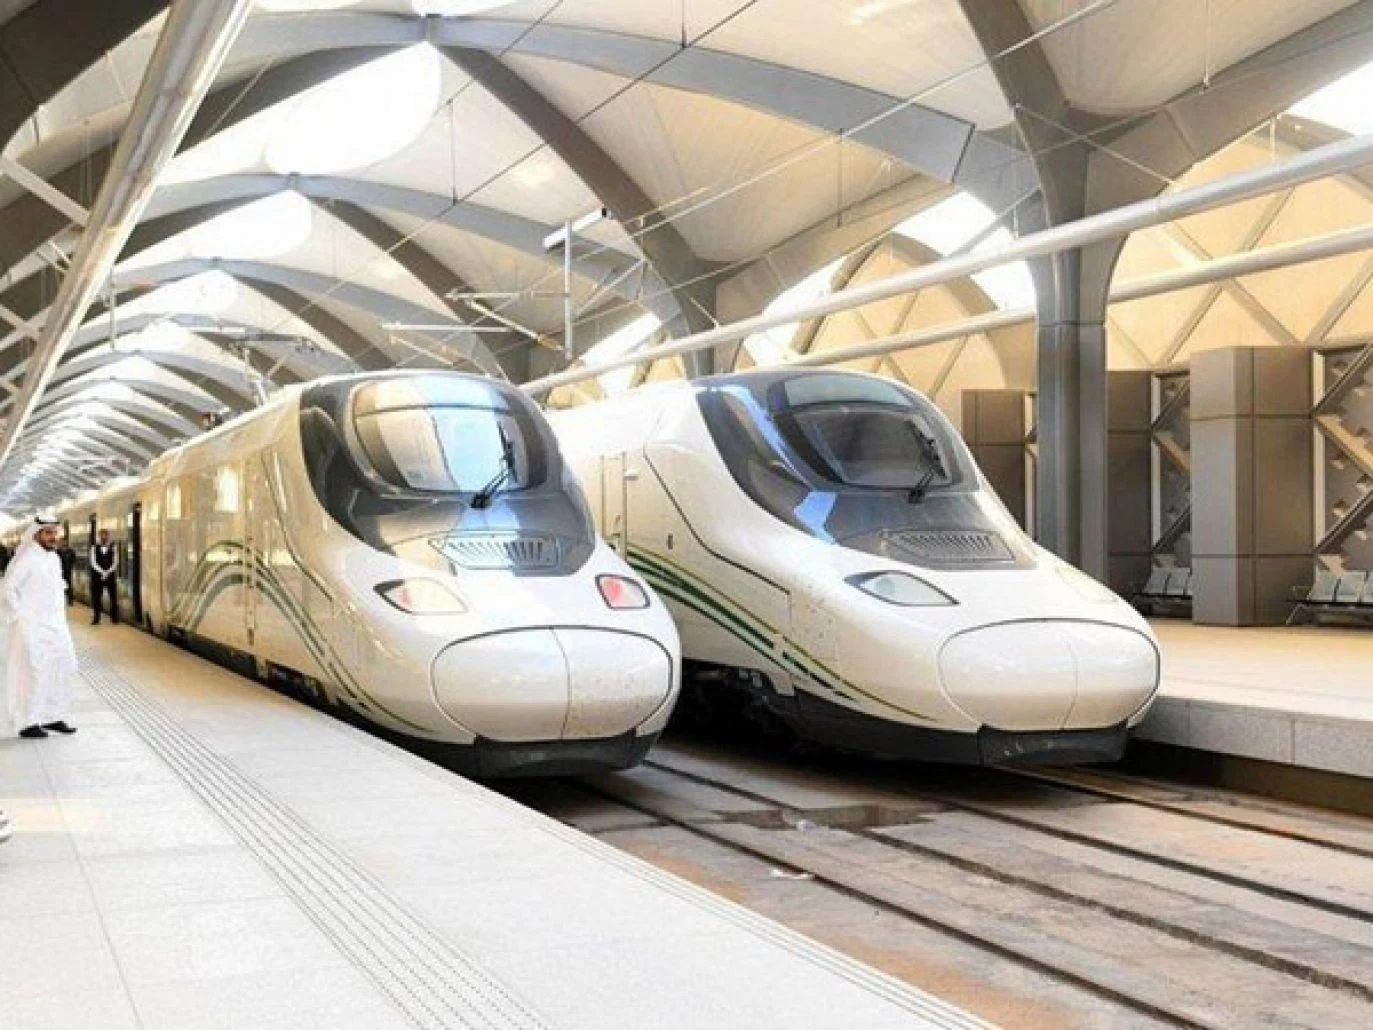 جدة تحتضن أكبر محطة قطارات في العالم